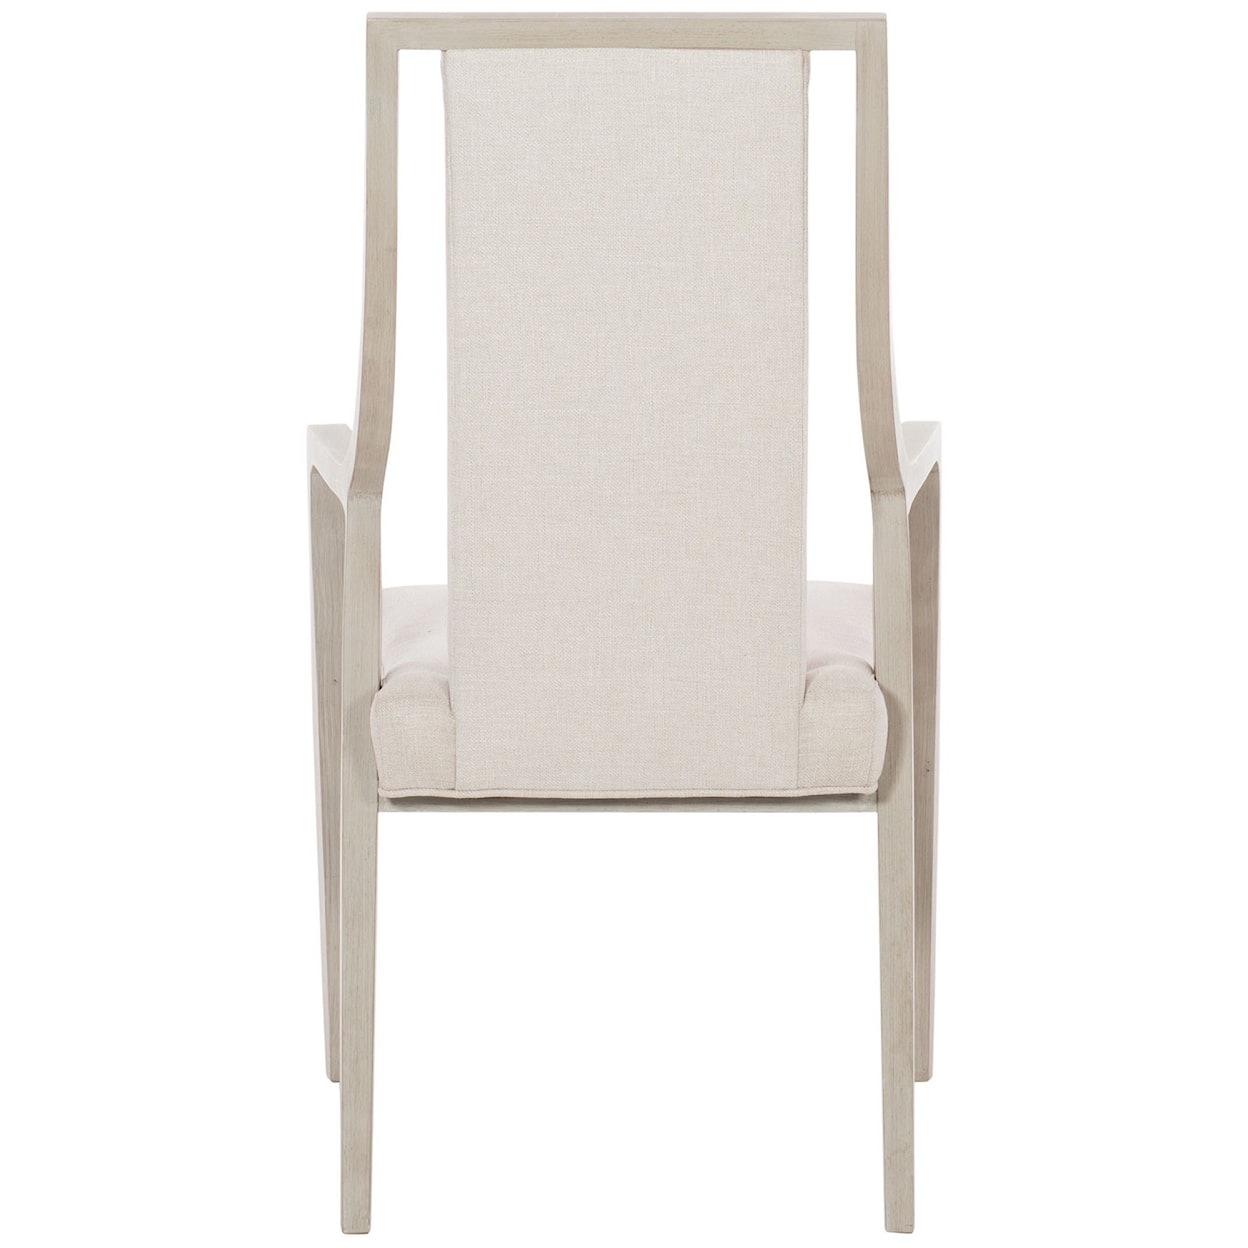 Bernhardt Axiom Axiom Arm Chair